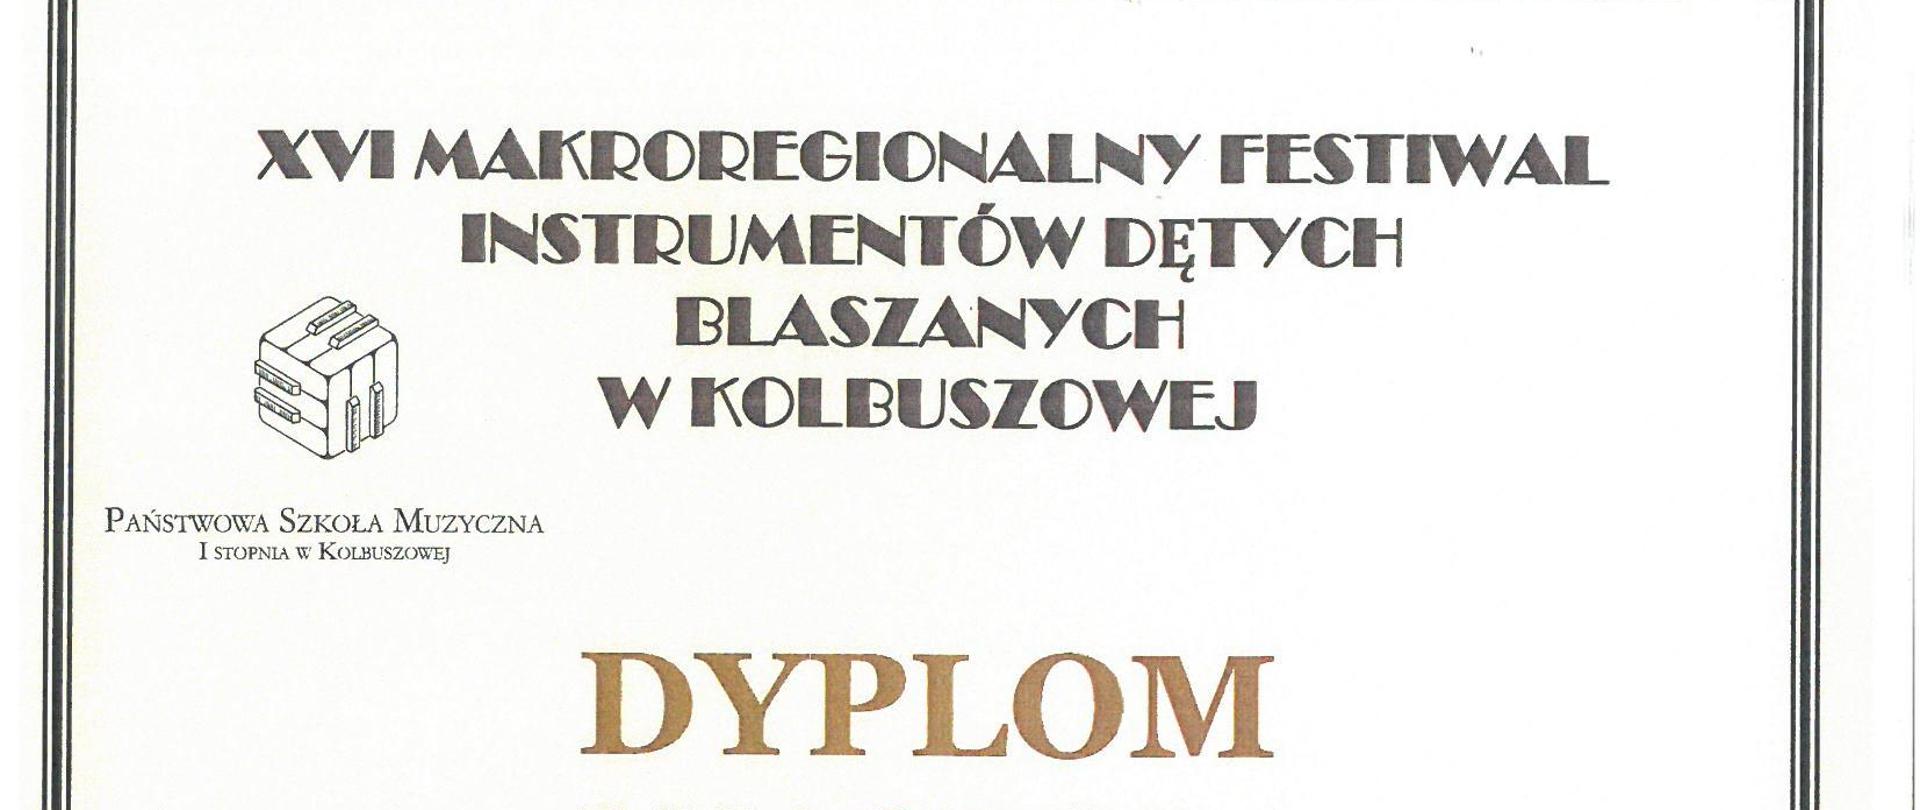 Dyplom - Makroregionalny Festiwal Instrumentów Dętych Blaszanych w Kolbuszowej - Antoni Orybkiewicz- 1 nagroda. Białe tło, czarne litery, na środku zdjęcie trąbki.